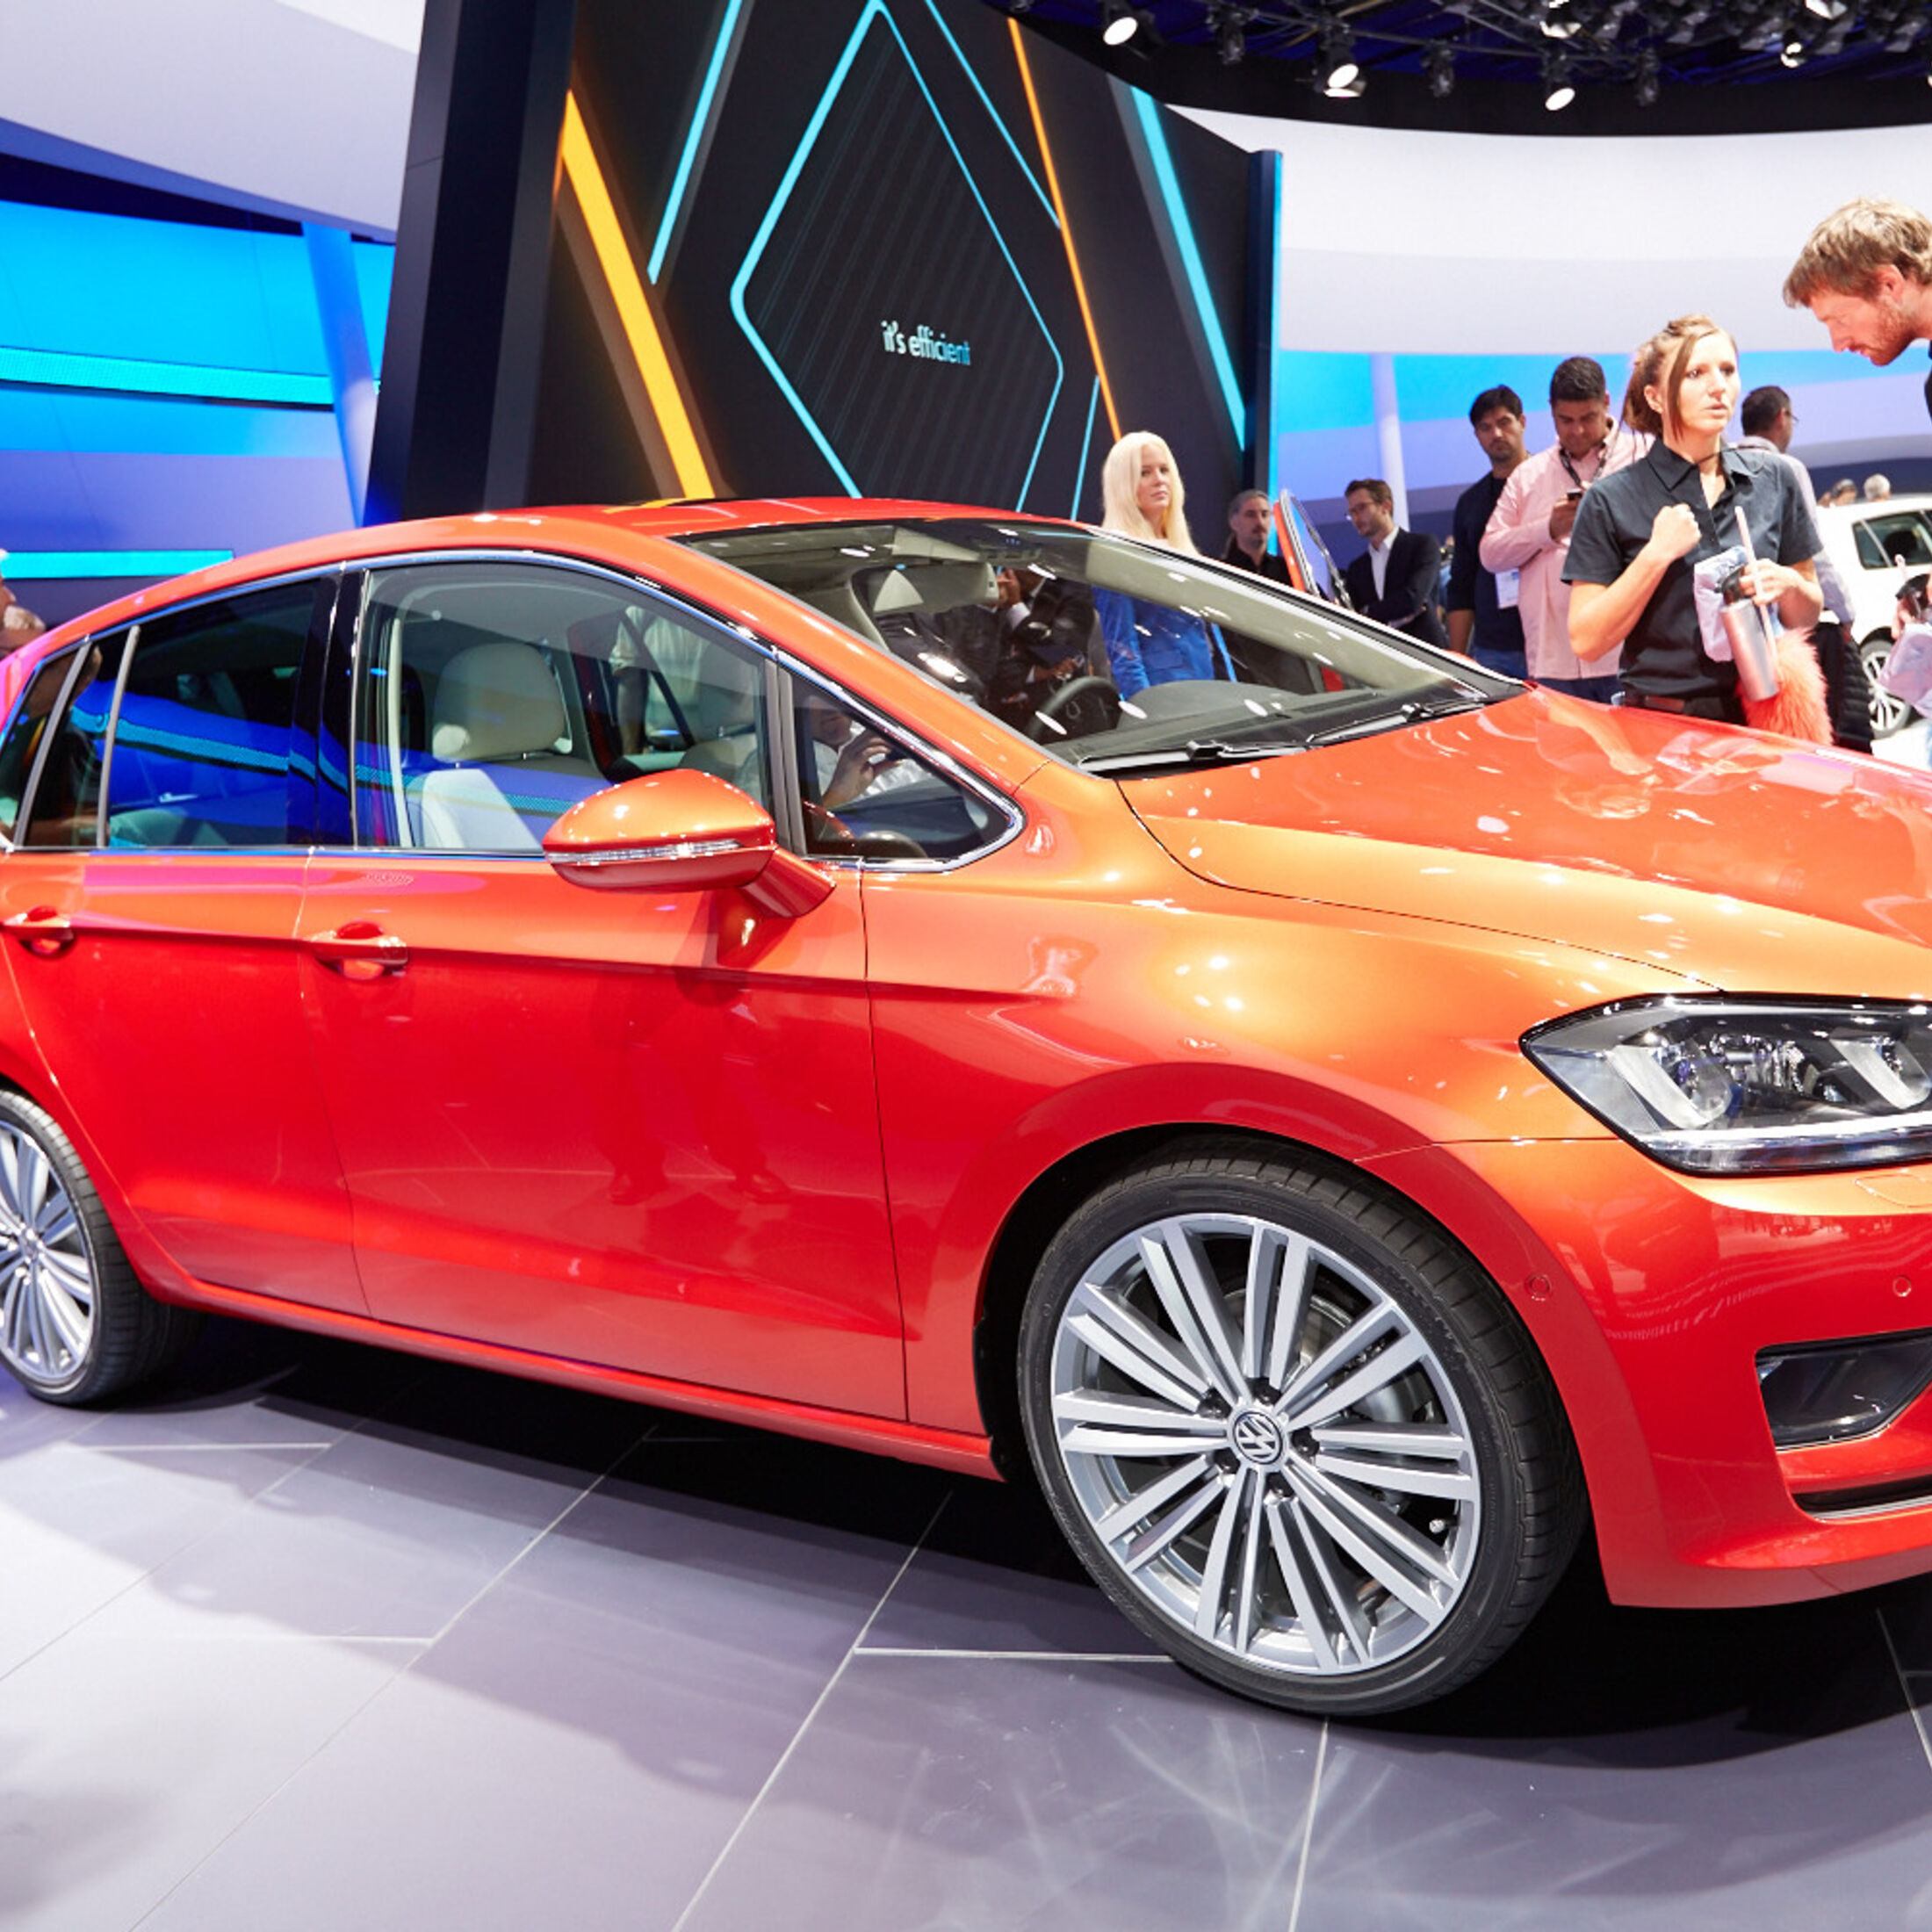 VW Golf Sportsvan: Neuer Golf-Ableger im Fahrbericht und technische